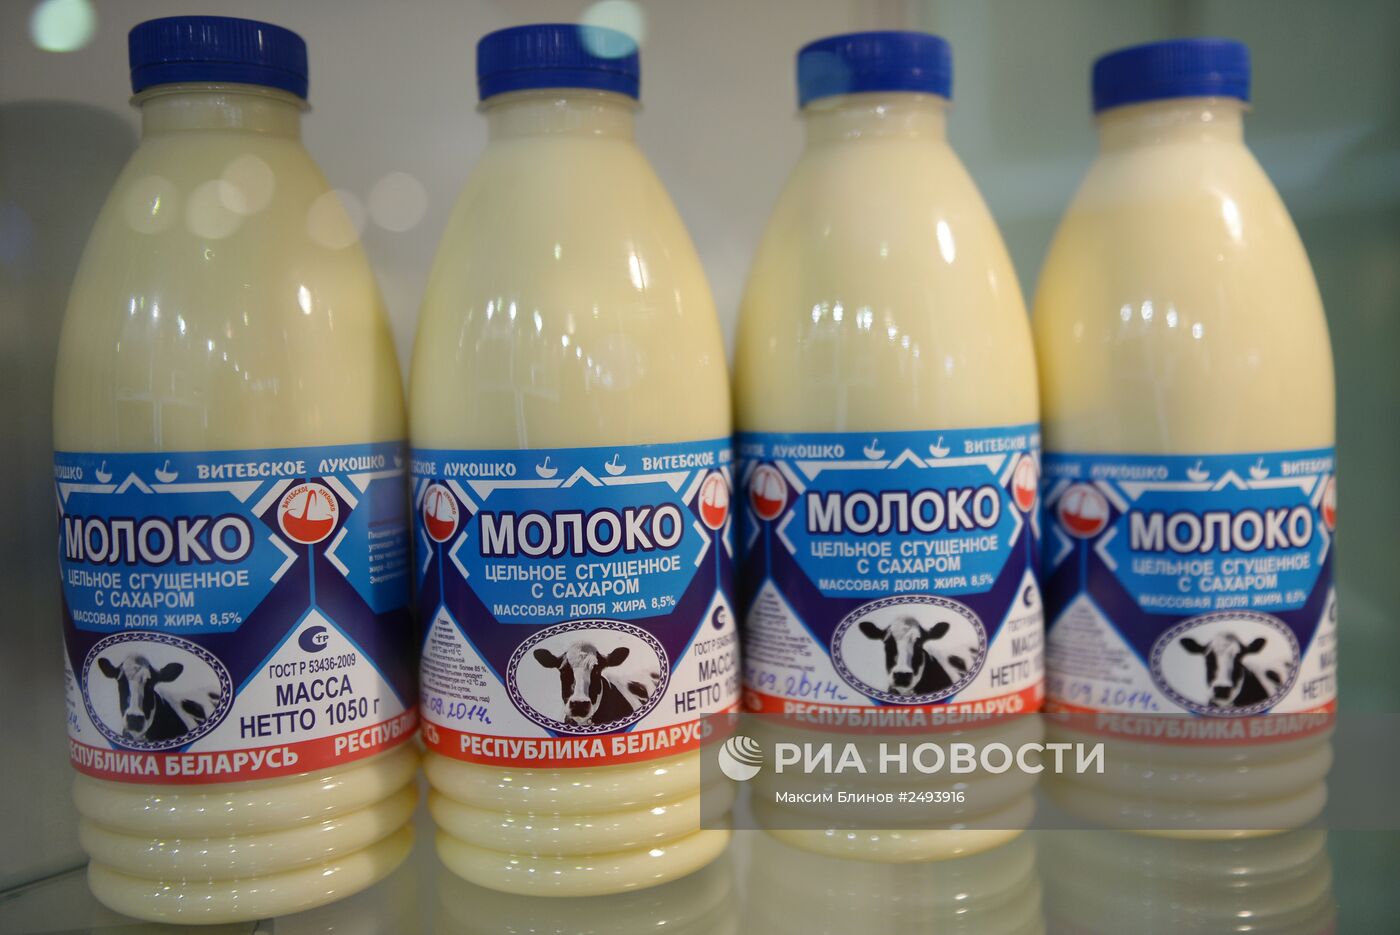 23-я Международная выставка продуктов питания и напитков "World Food Moscow"